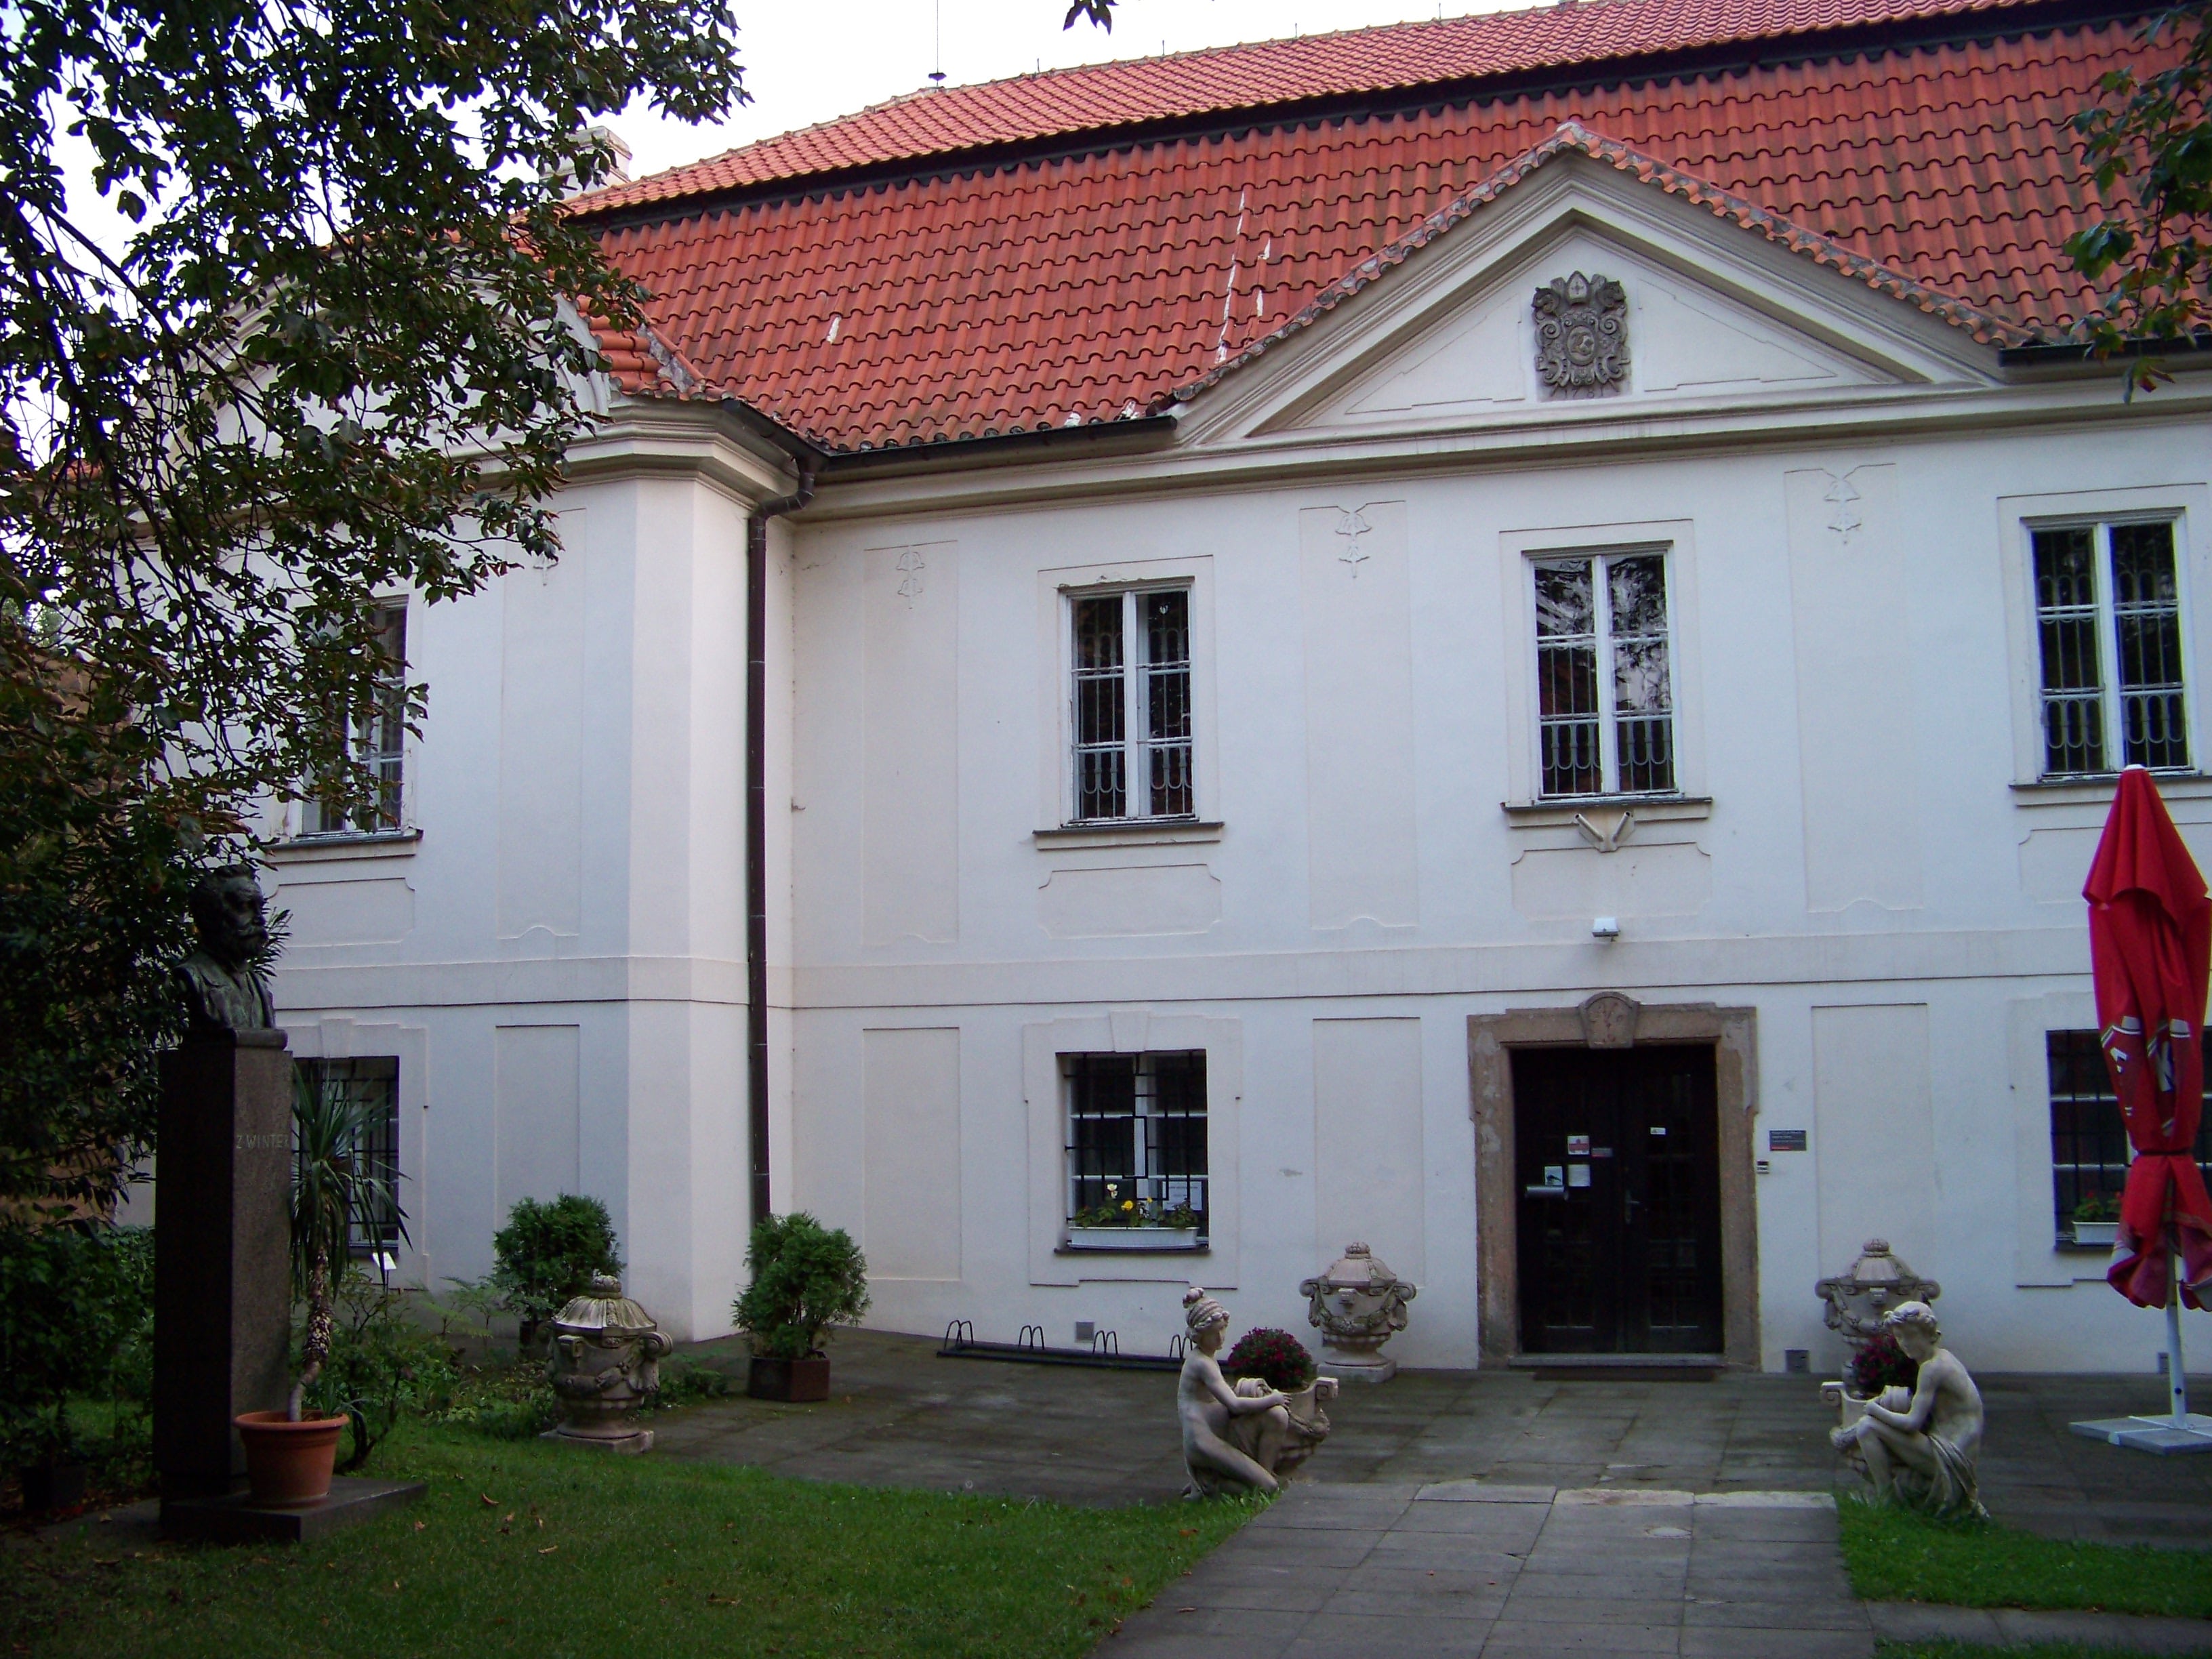 Muzeum T.G.M. Rakovník